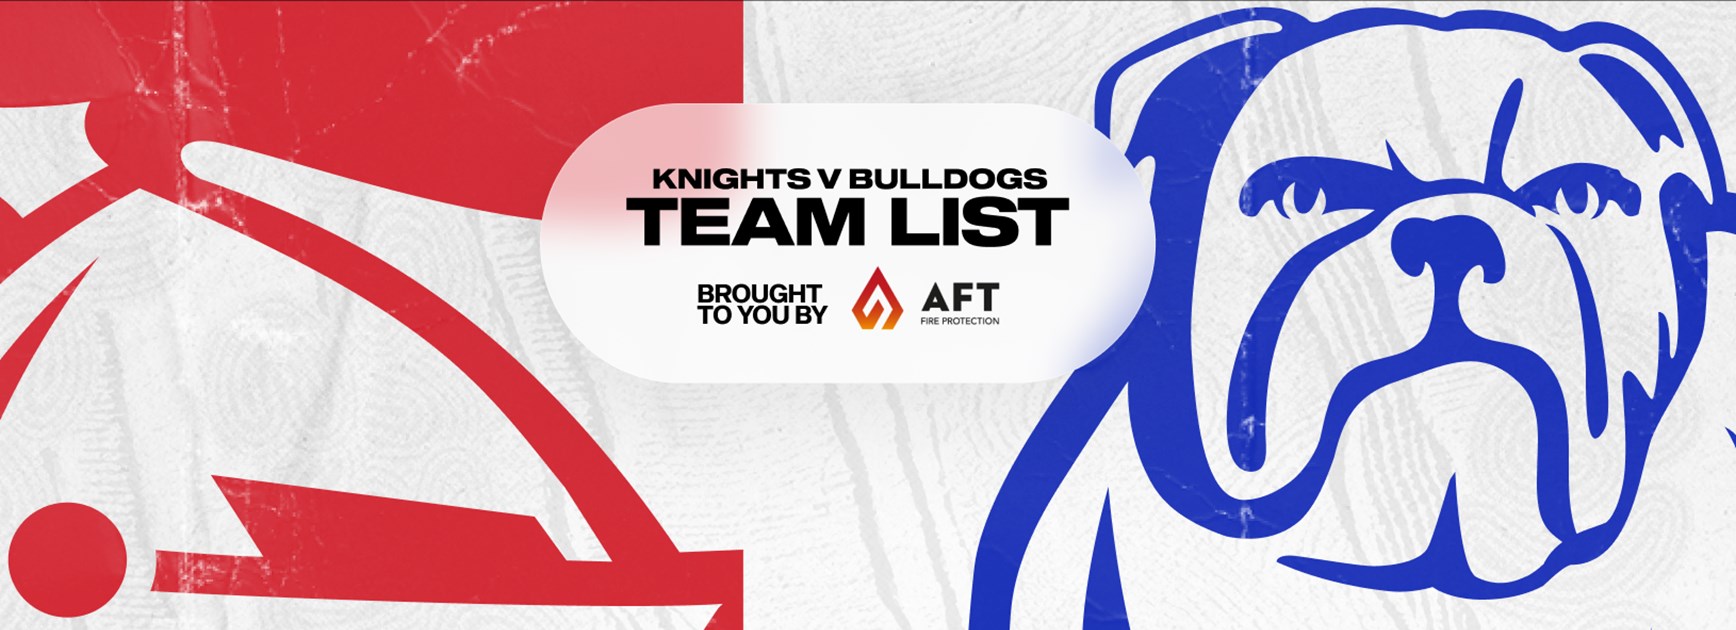 Knights v Bulldogs Round 13 NRL team list